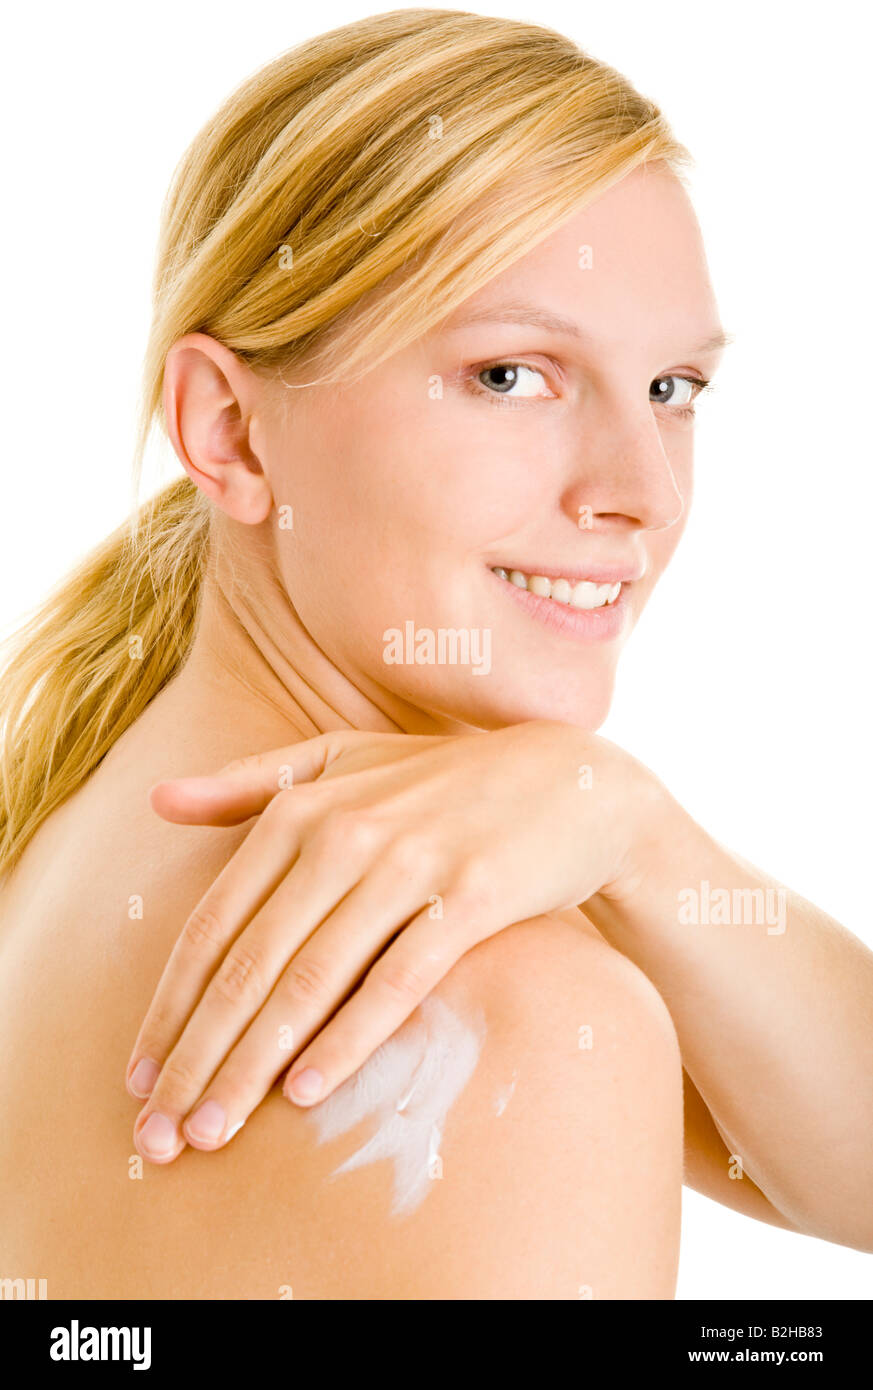 Mettez de la peau lotion cosmétique de soins de beauté, soins de la peau lotion pour le corps de bien-être Banque D'Images